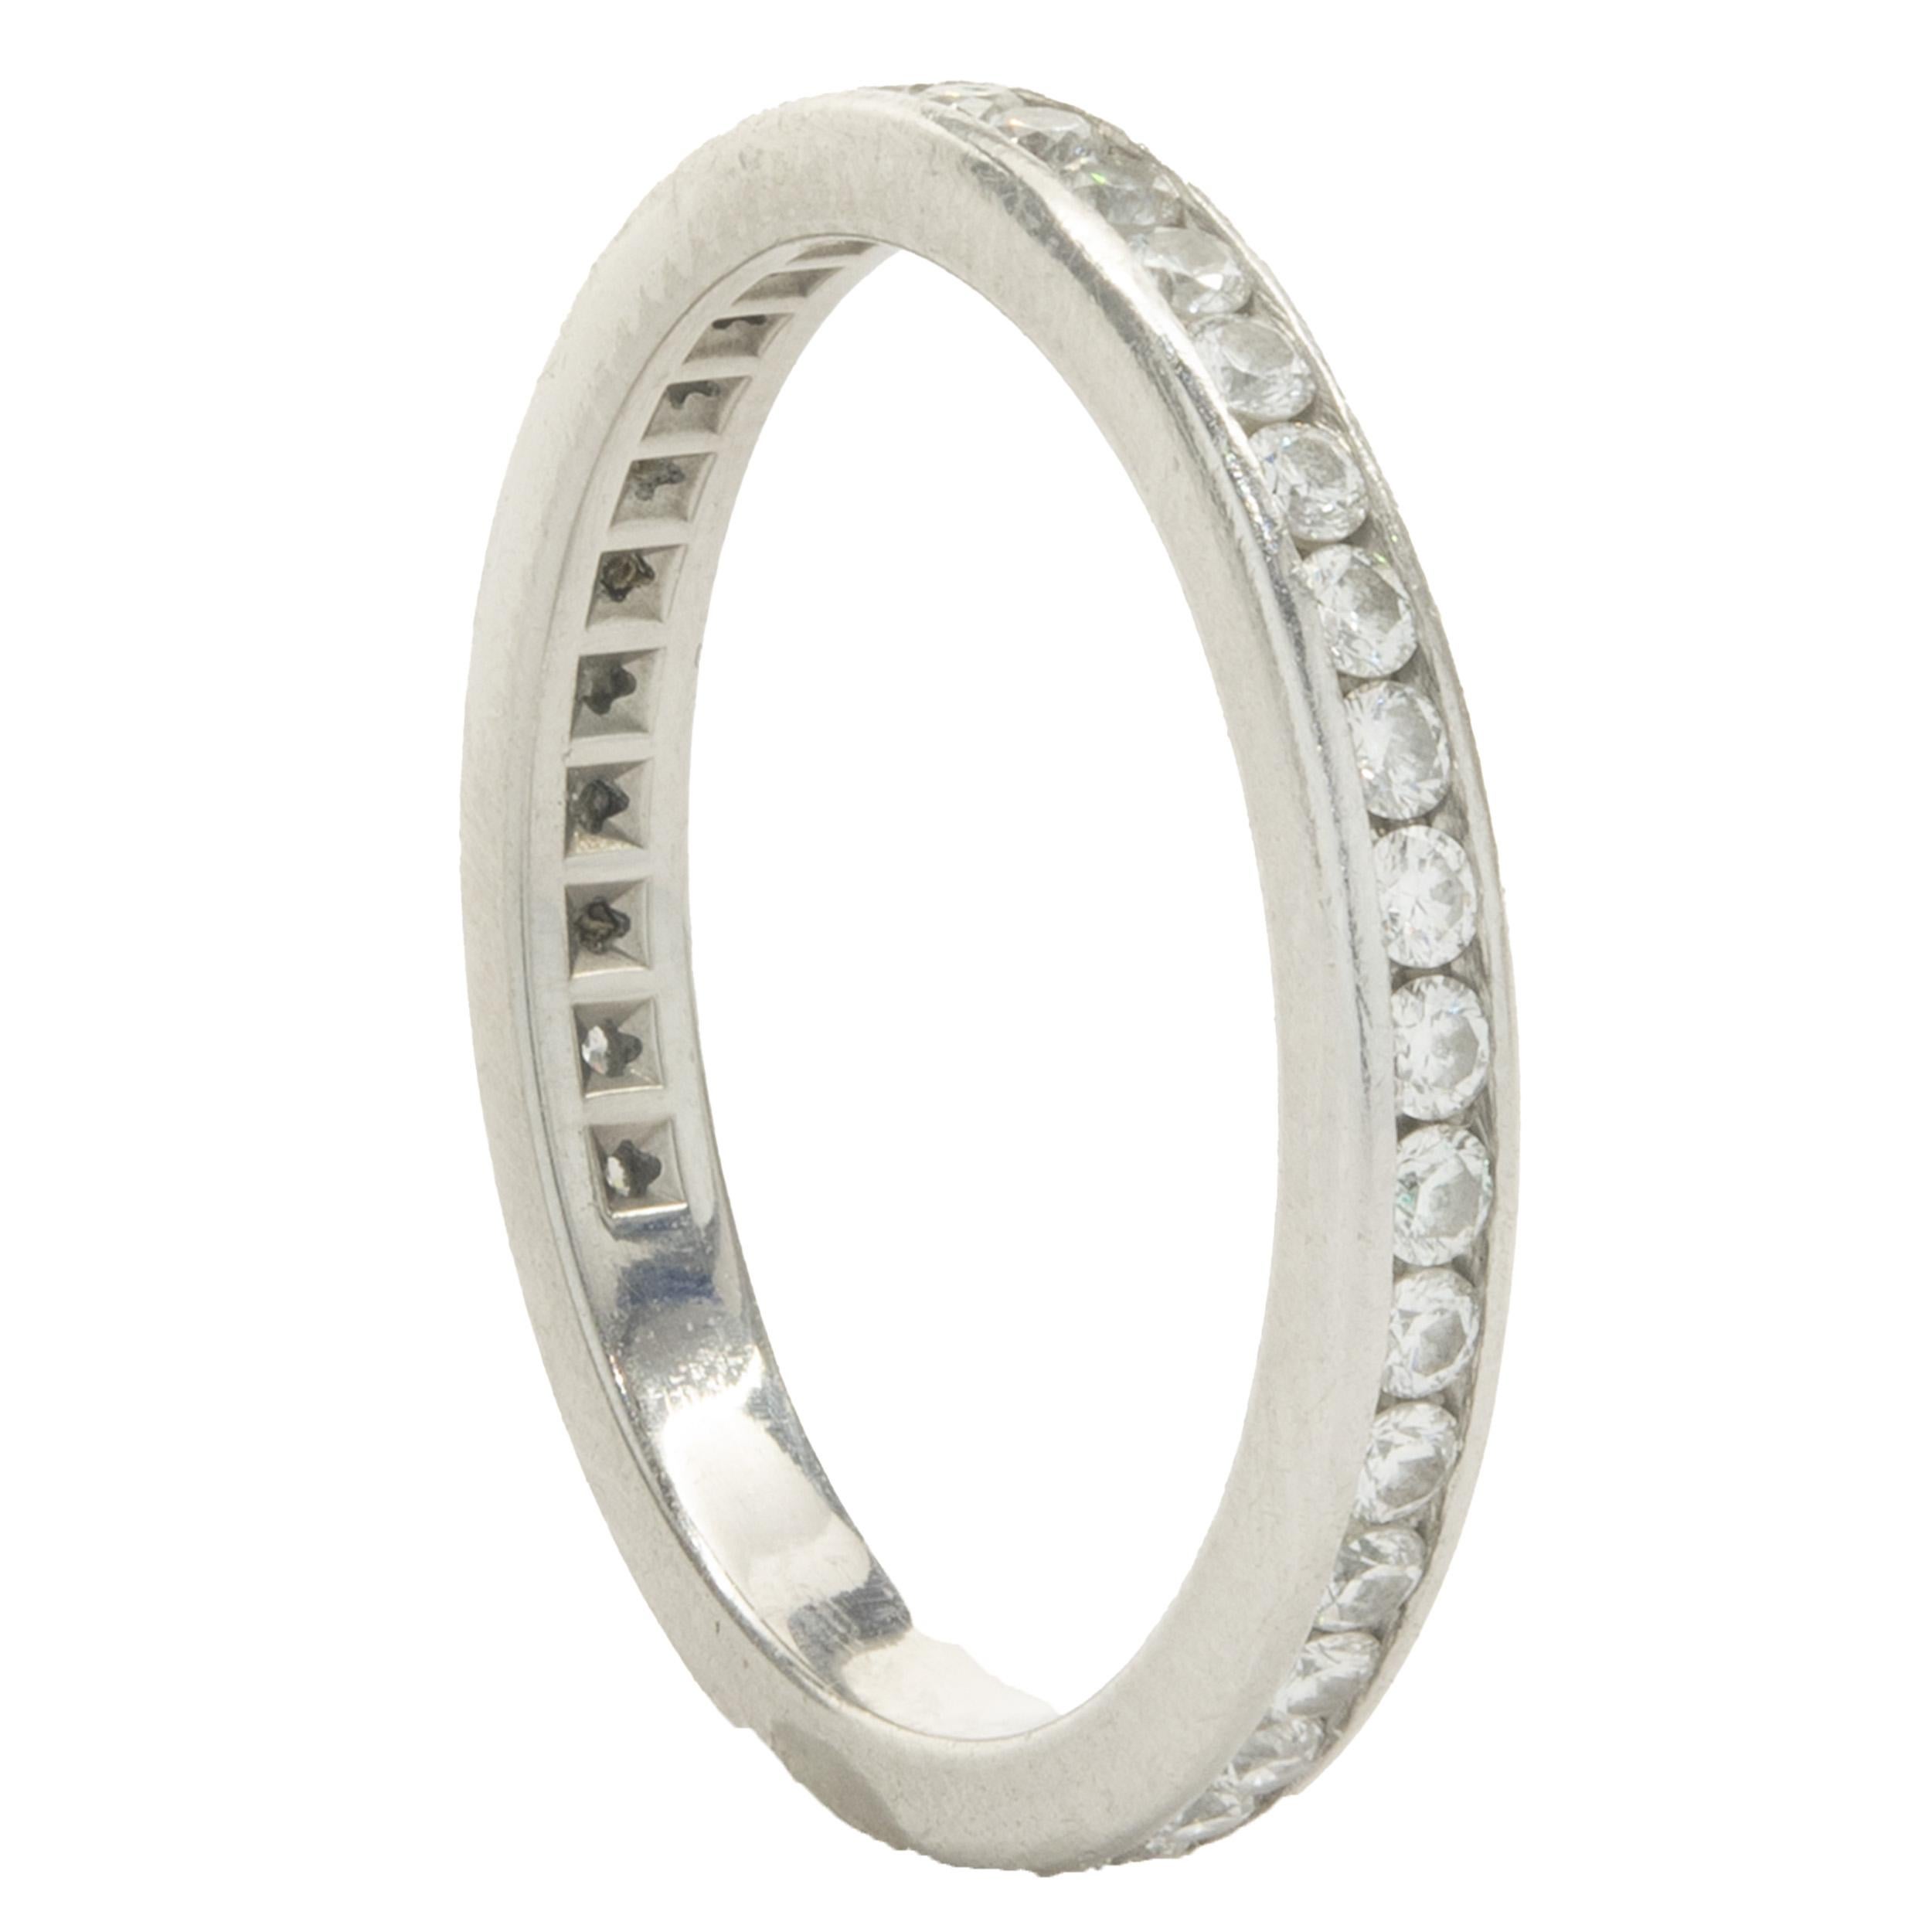 Designer : Tiffany & Co. 
Matériau : Platine
Diamant : 38 diamants ronds de taille brillant = 0,76cttw
Couleur : G 
Clarté : VS2
Dimensions : la partie supérieure de l'anneau mesure 2.2 mm de large
Taille : 5
Poids : 2.89 grammes